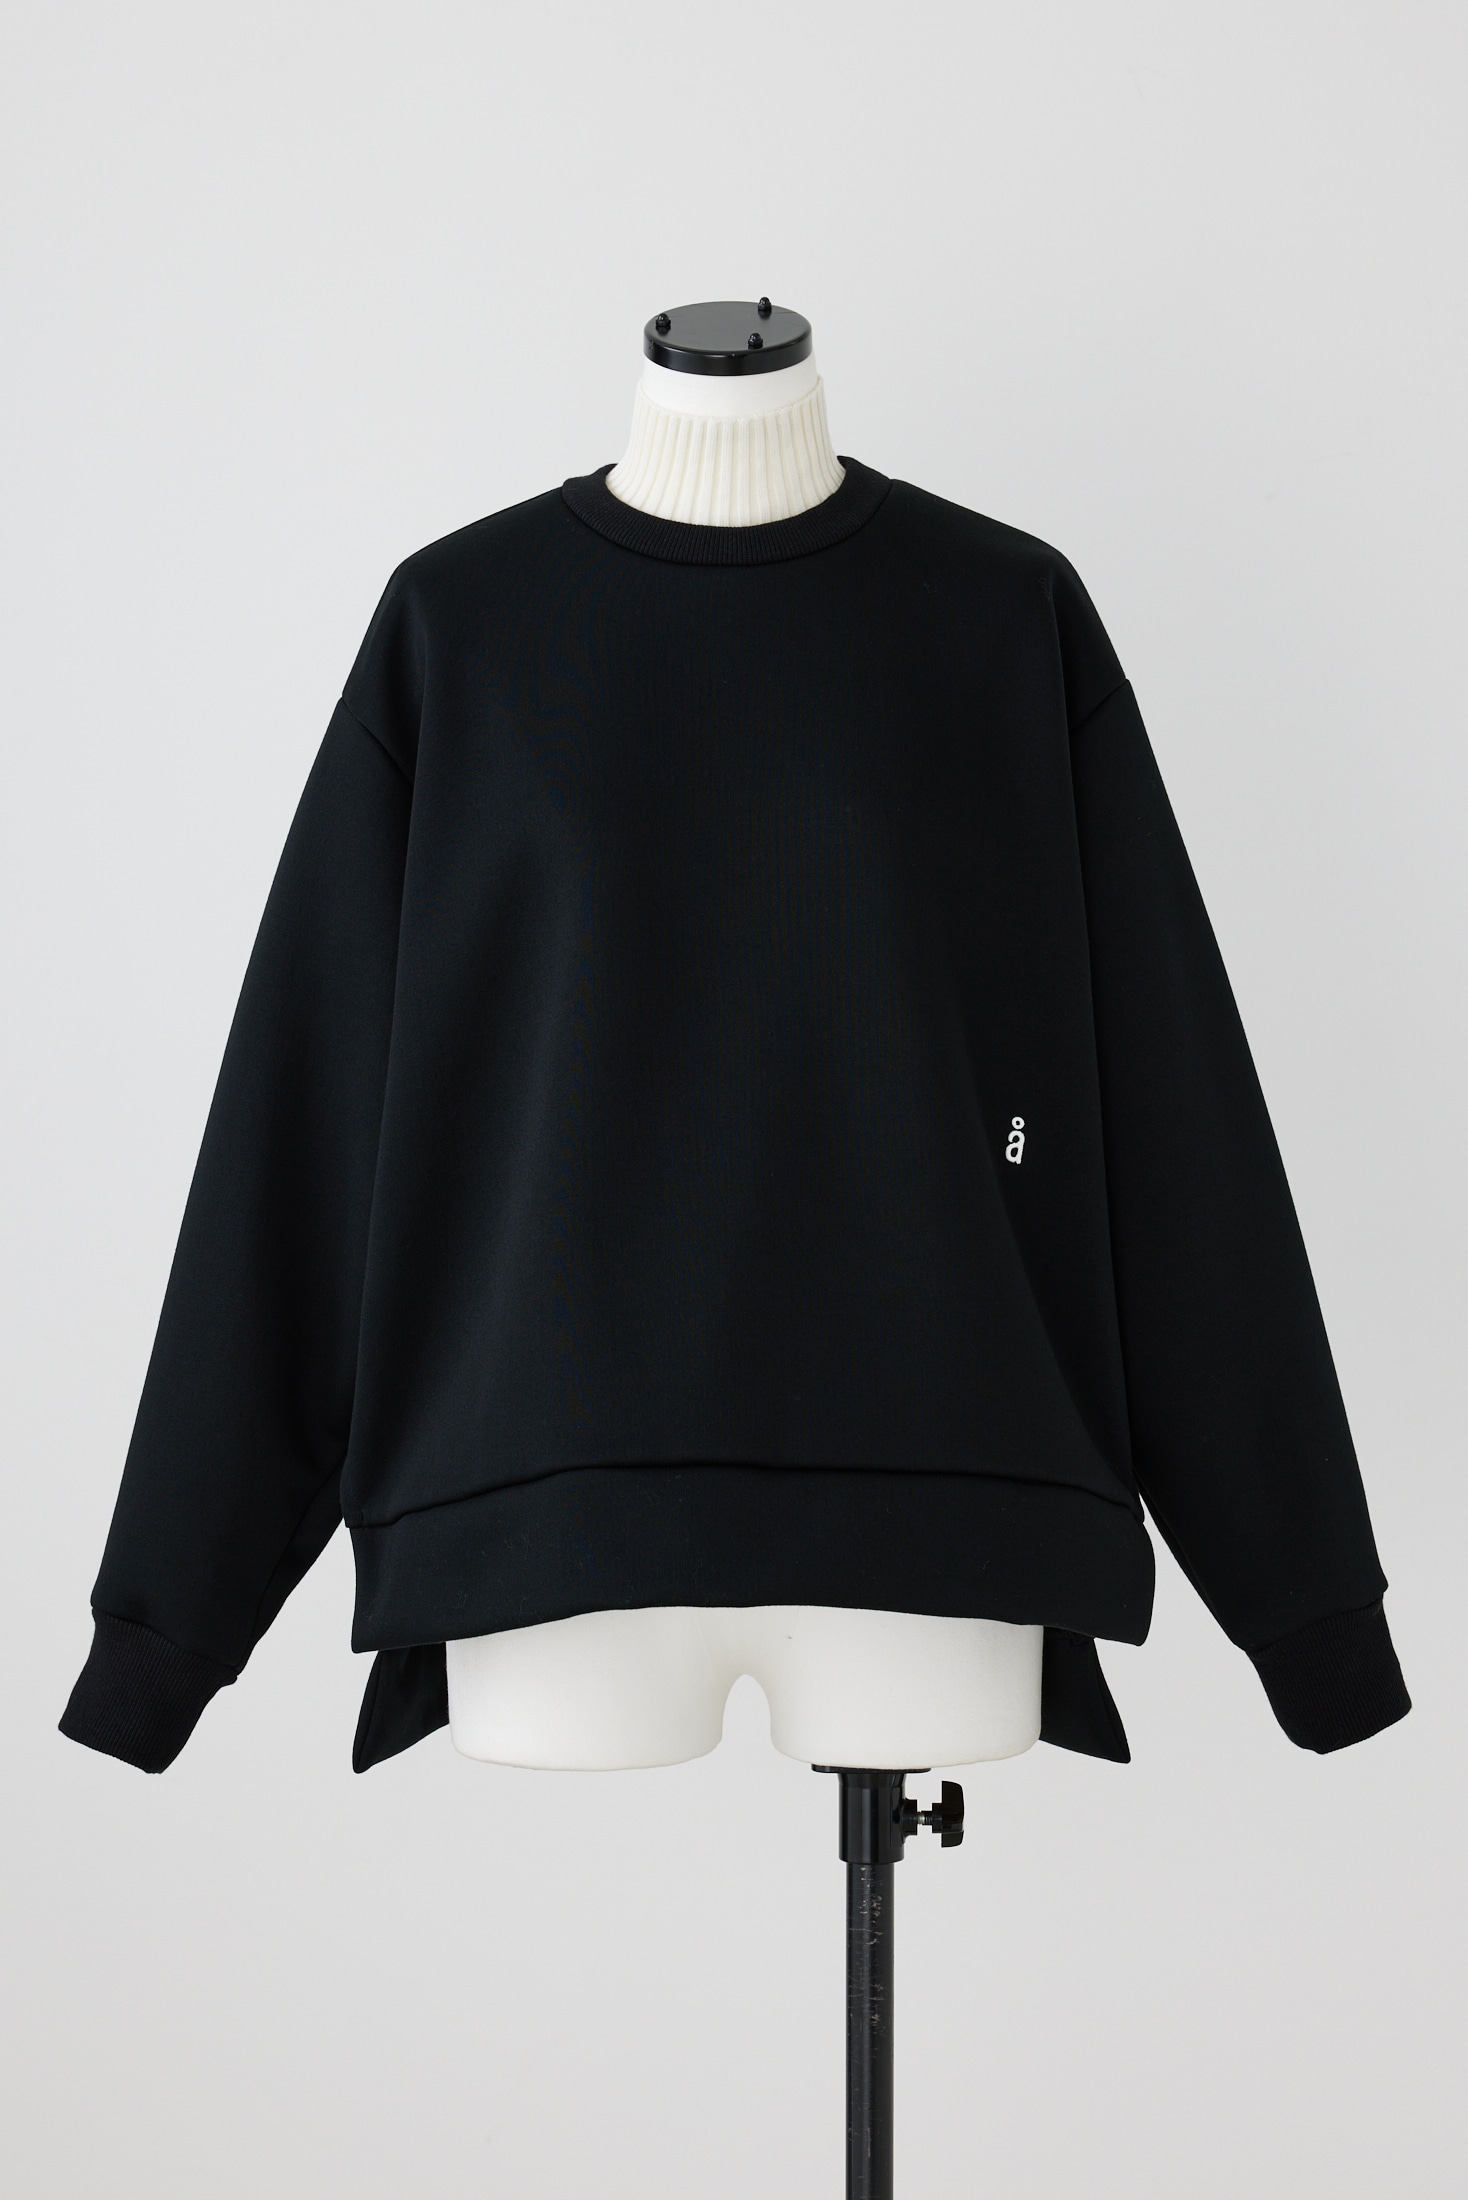 9,560円【新品タグ付き】någonstans  layered pullover